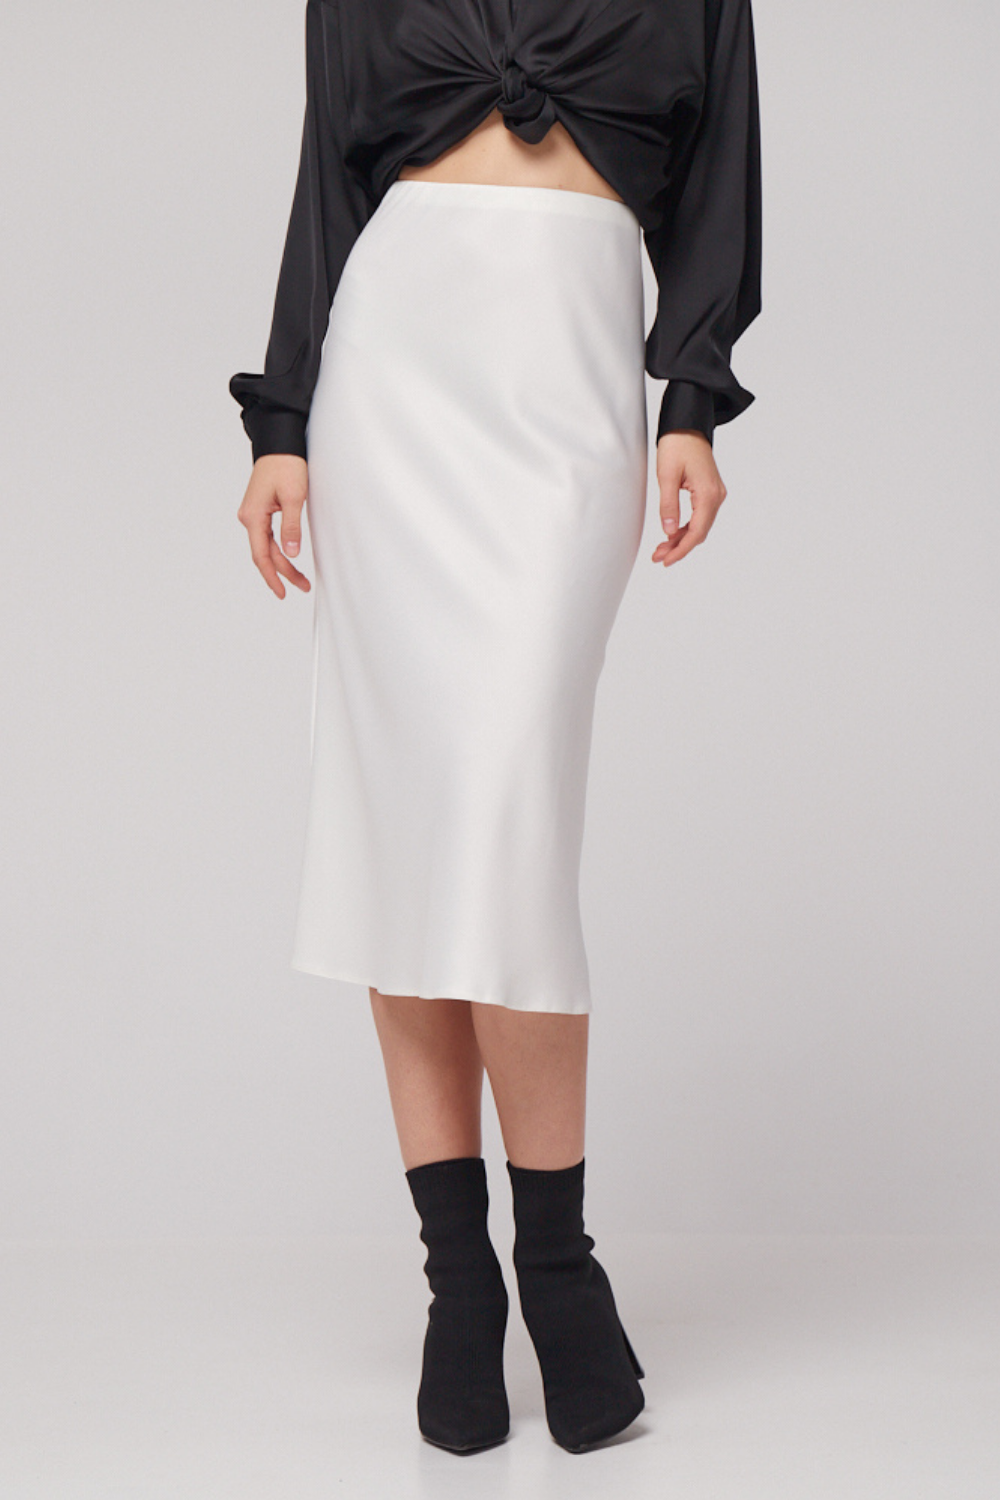 Mléčně bílá hedvábná sukně s elastickým pasem (Mint) 21710